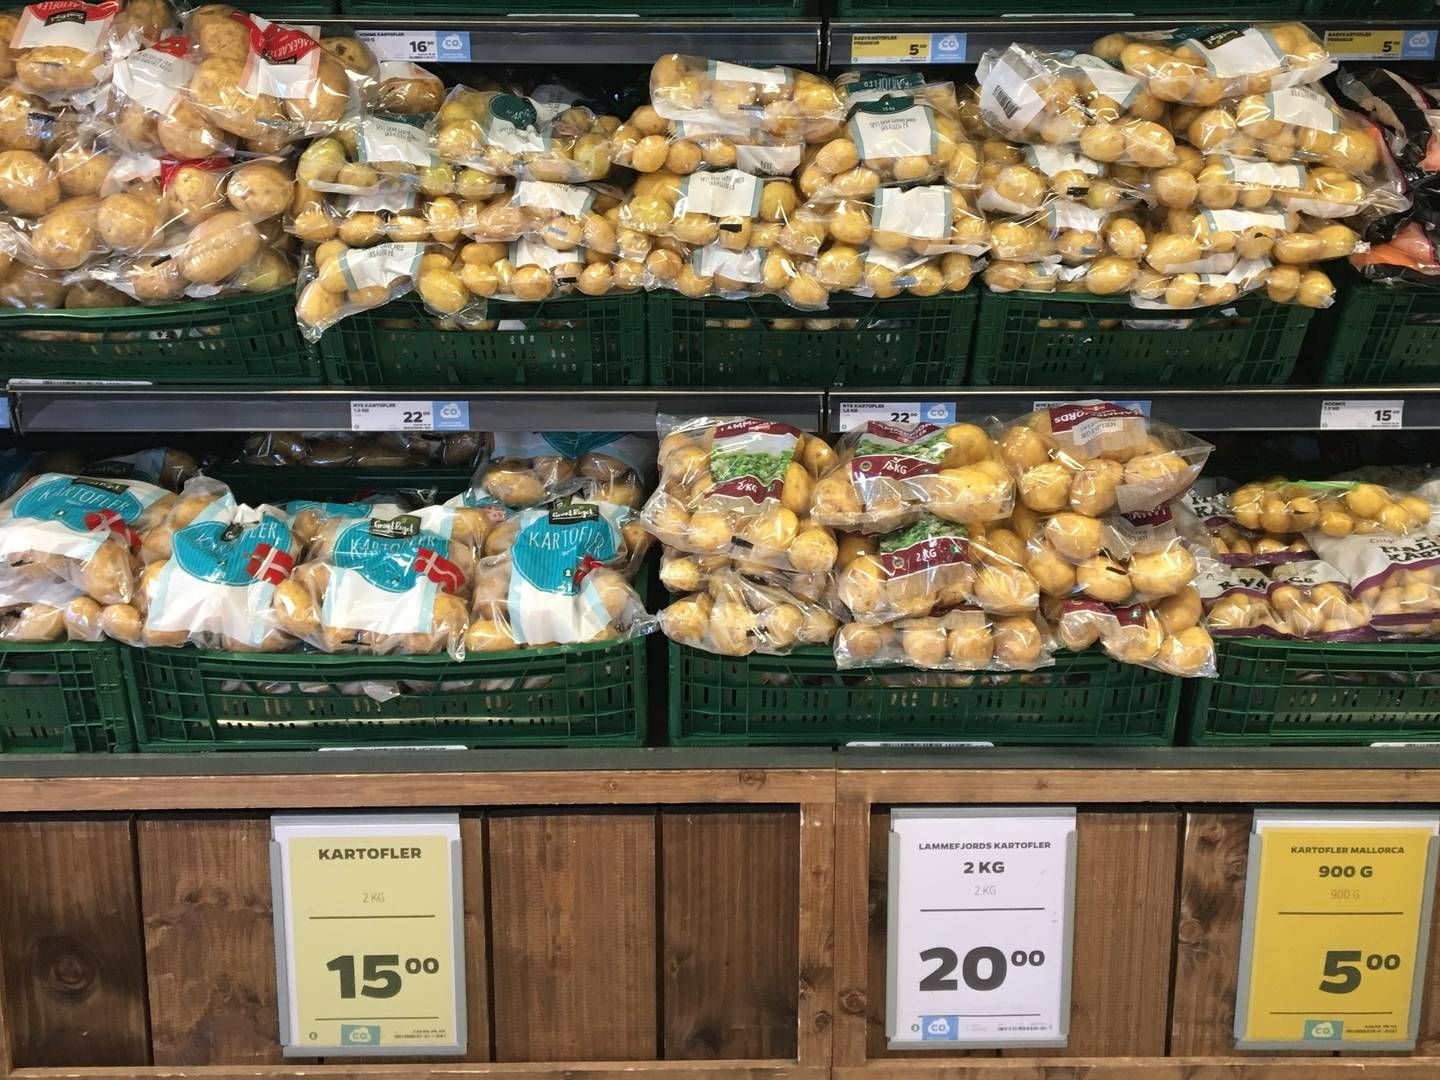 Kartofler med et prisskilt til 15 kr., der ved kassen slås ind til 17, kan blive fortid, hvis Netto vælger at indføre elektroniske prisskilte. | Foto: Manon Buch.